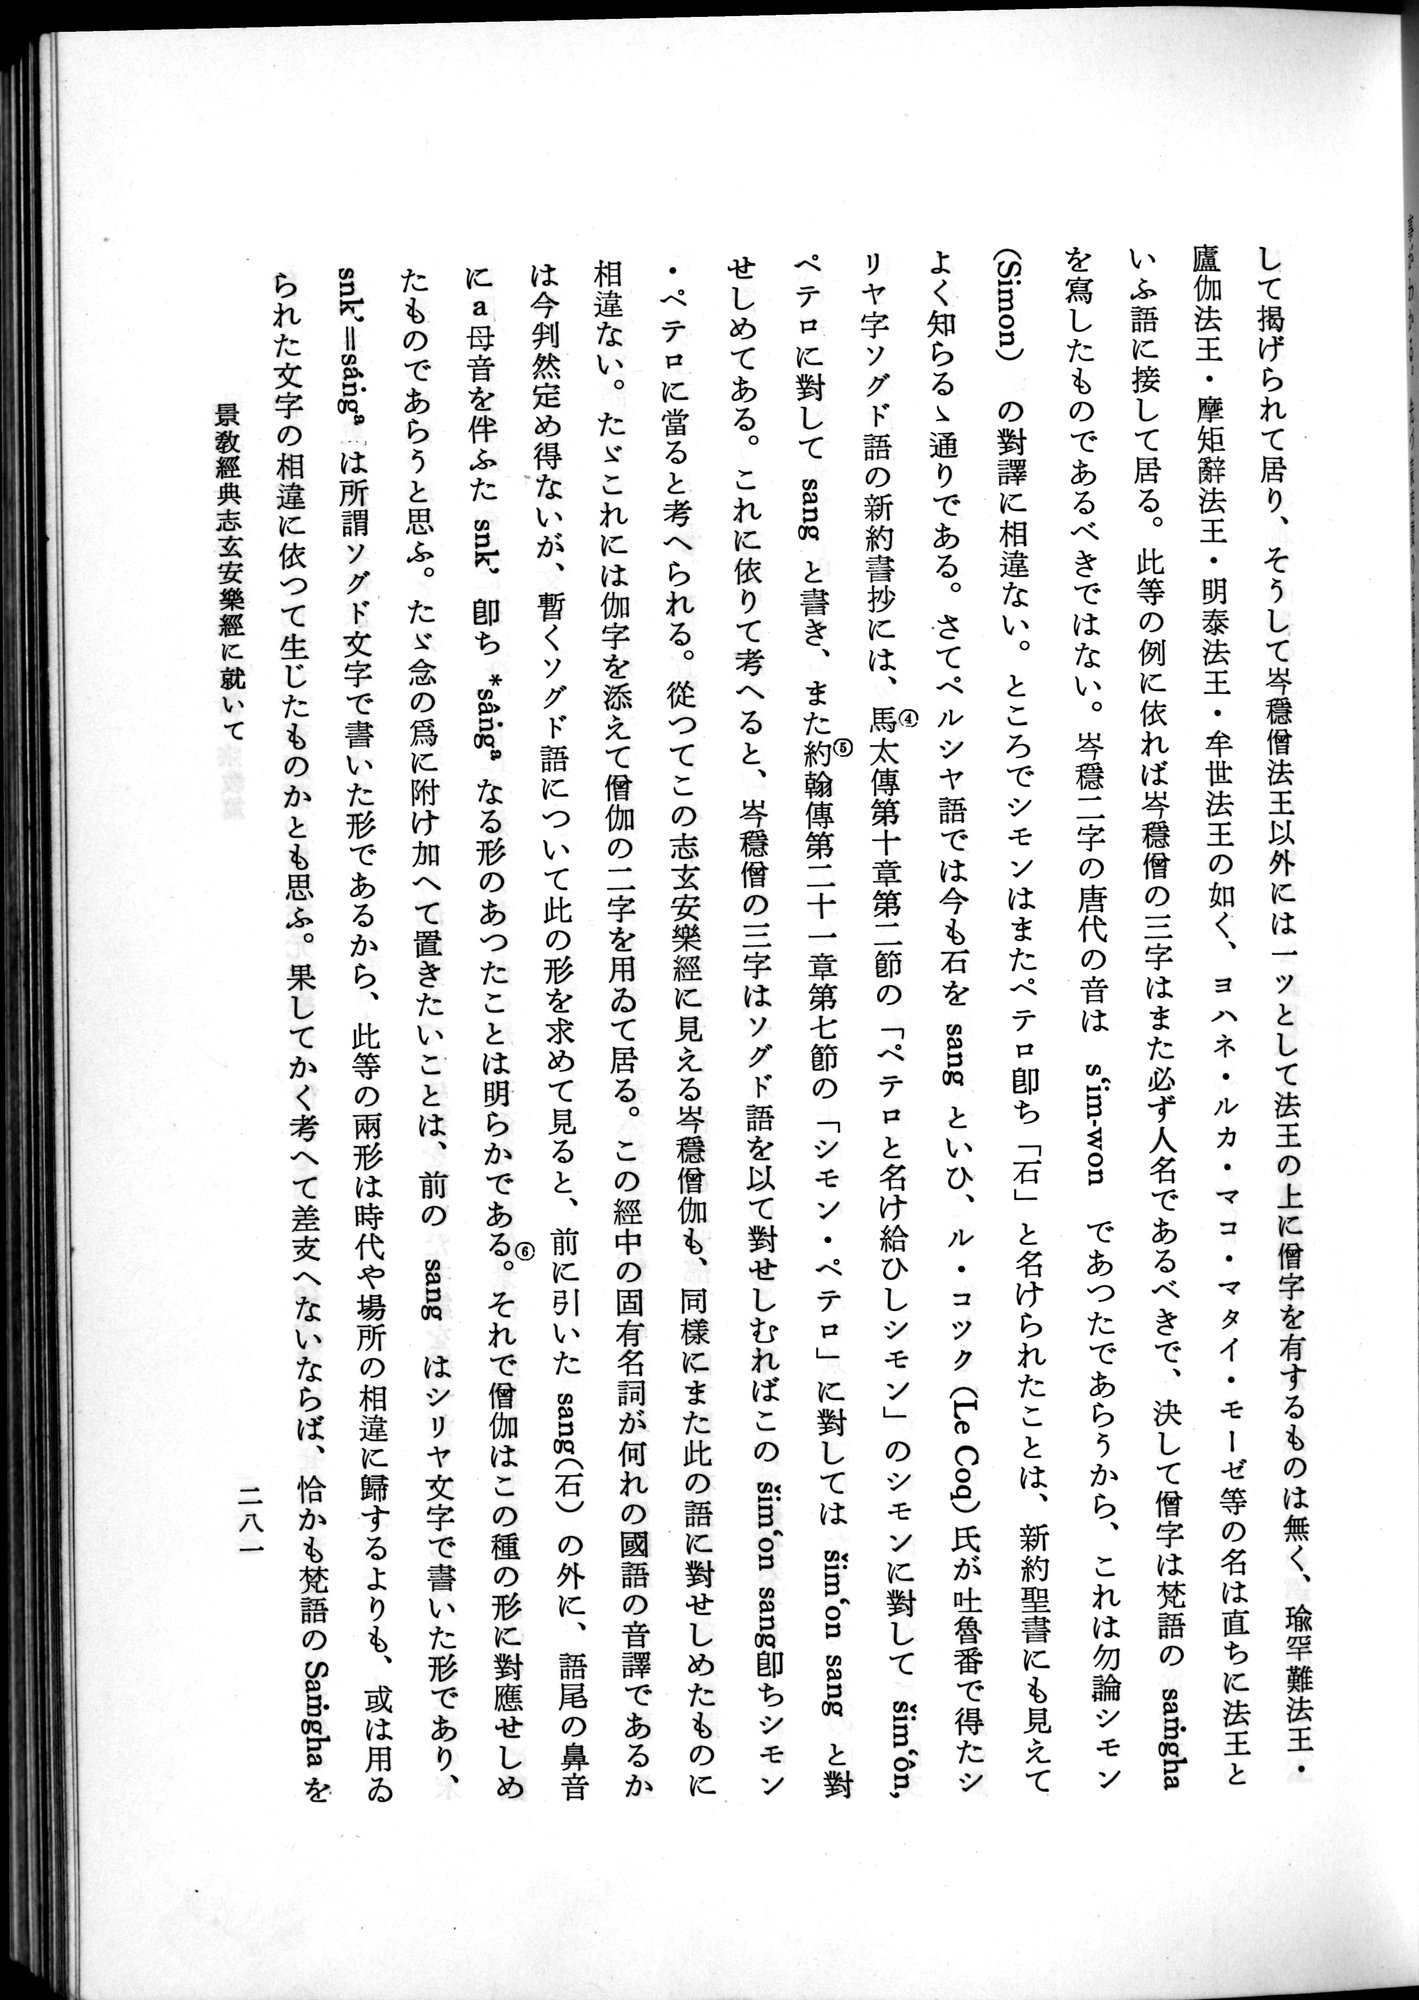 羽田博士史学論文集 : vol.2 / Page 343 (Grayscale High Resolution Image)